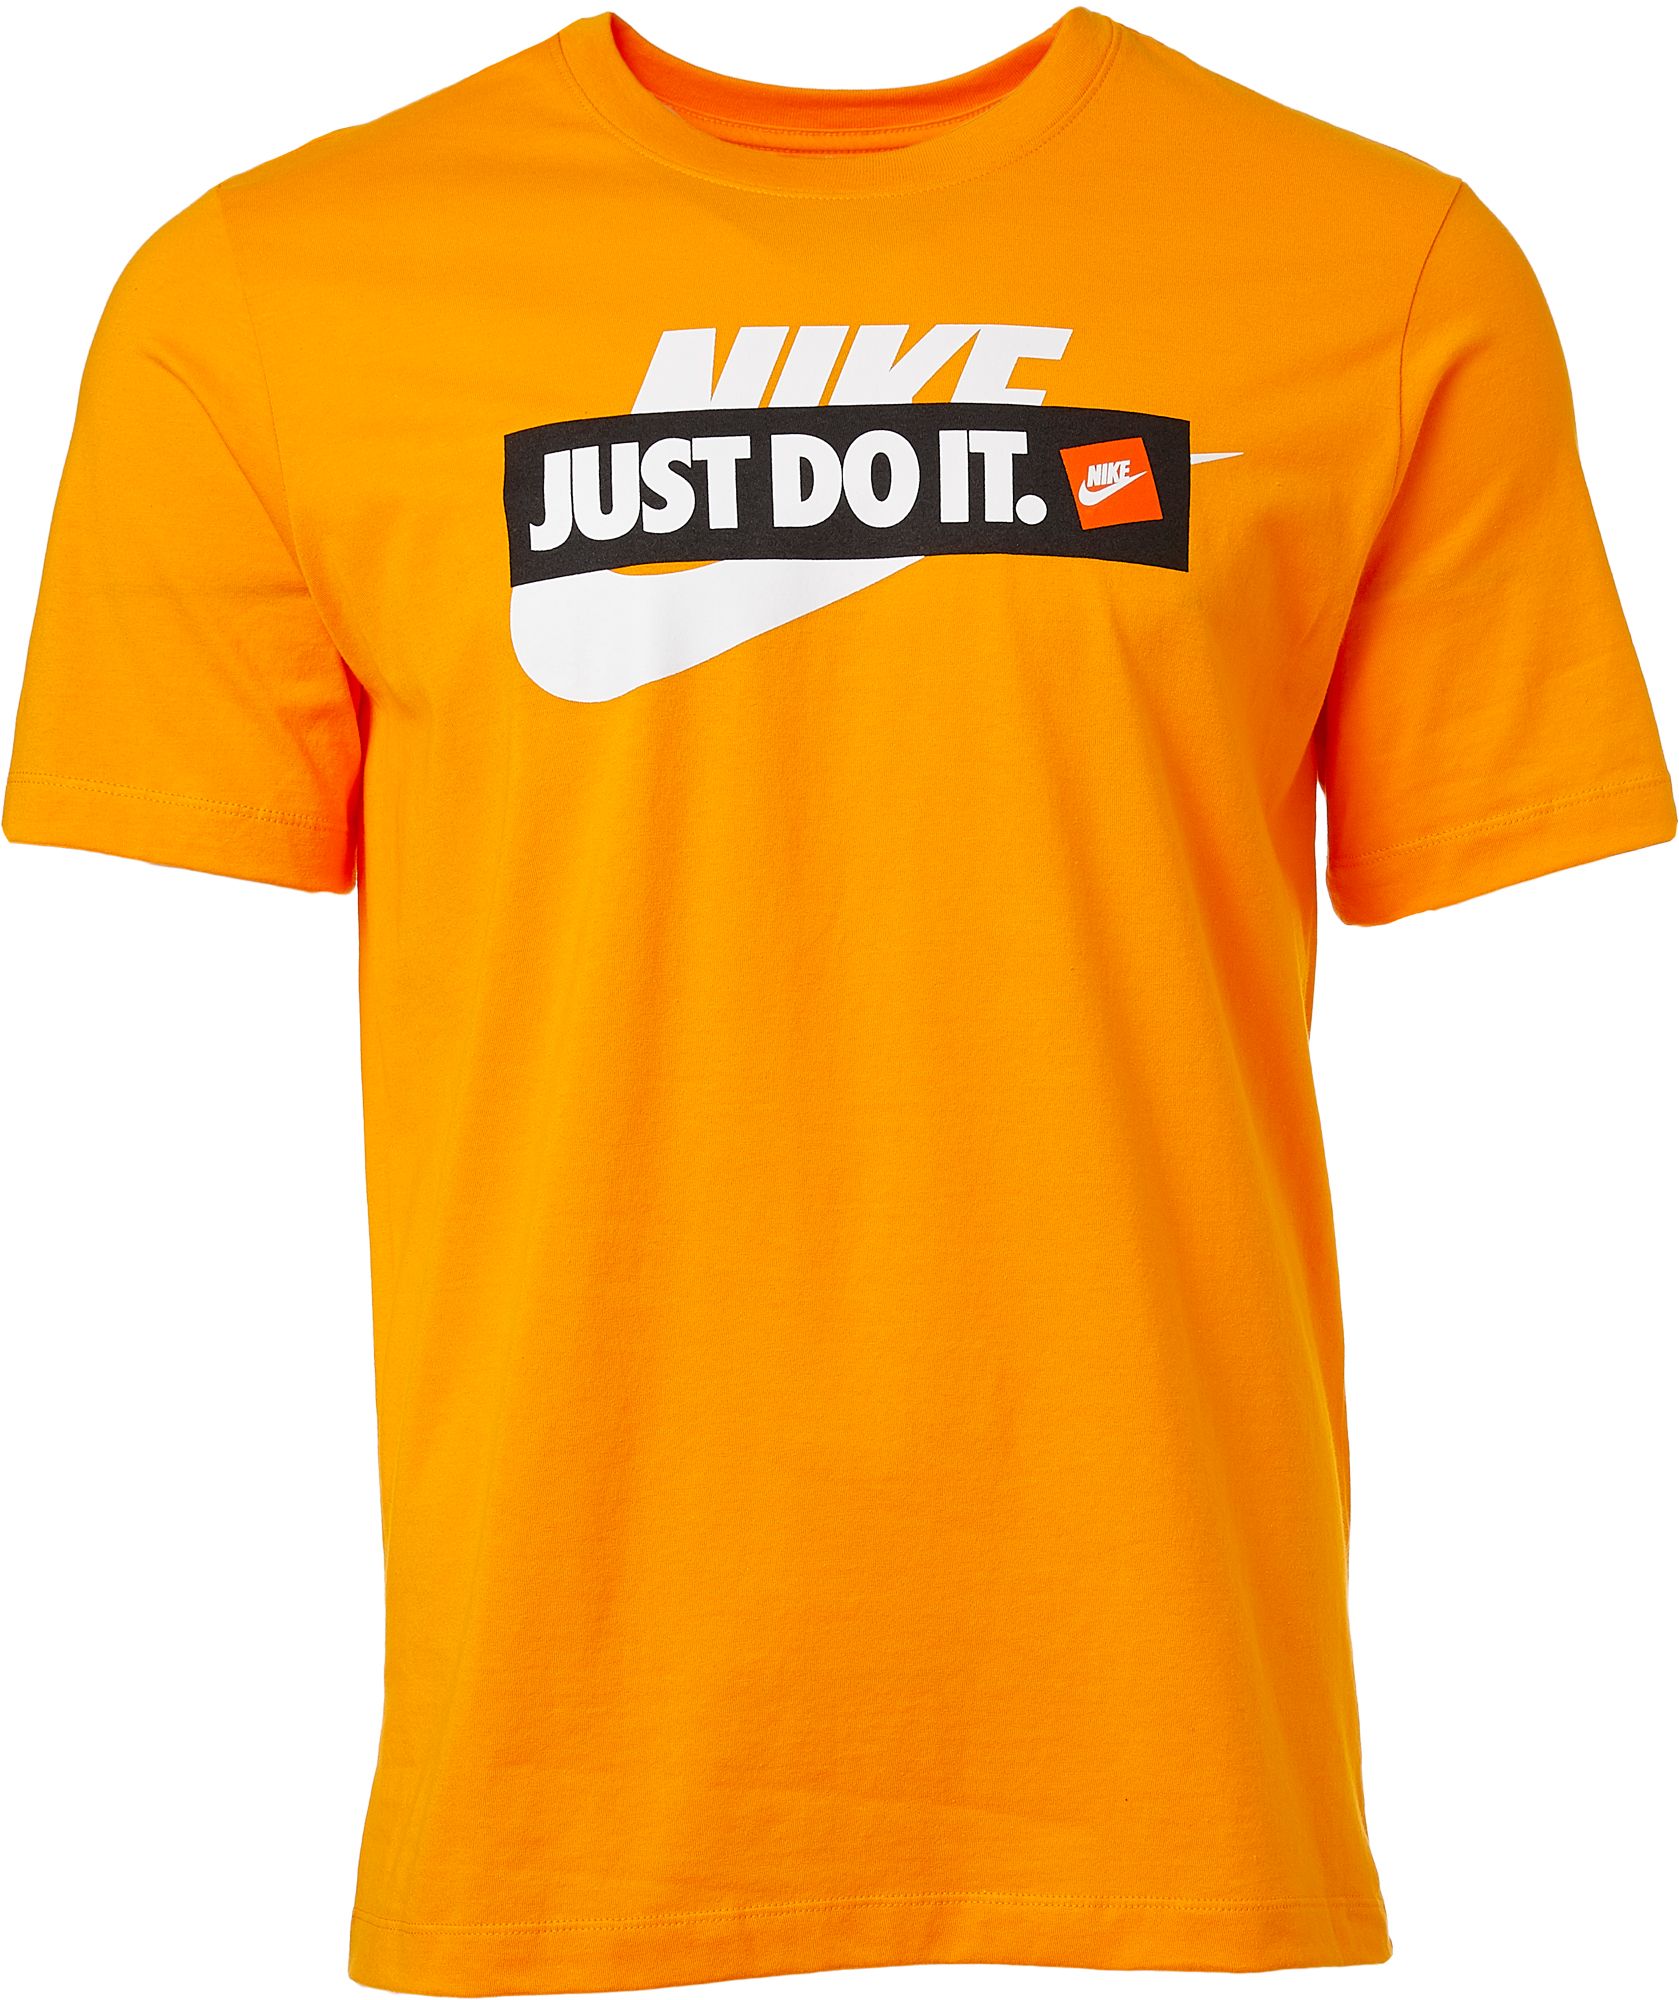 Nike Men's Sportswear Just Do It Graphic Tee - .97